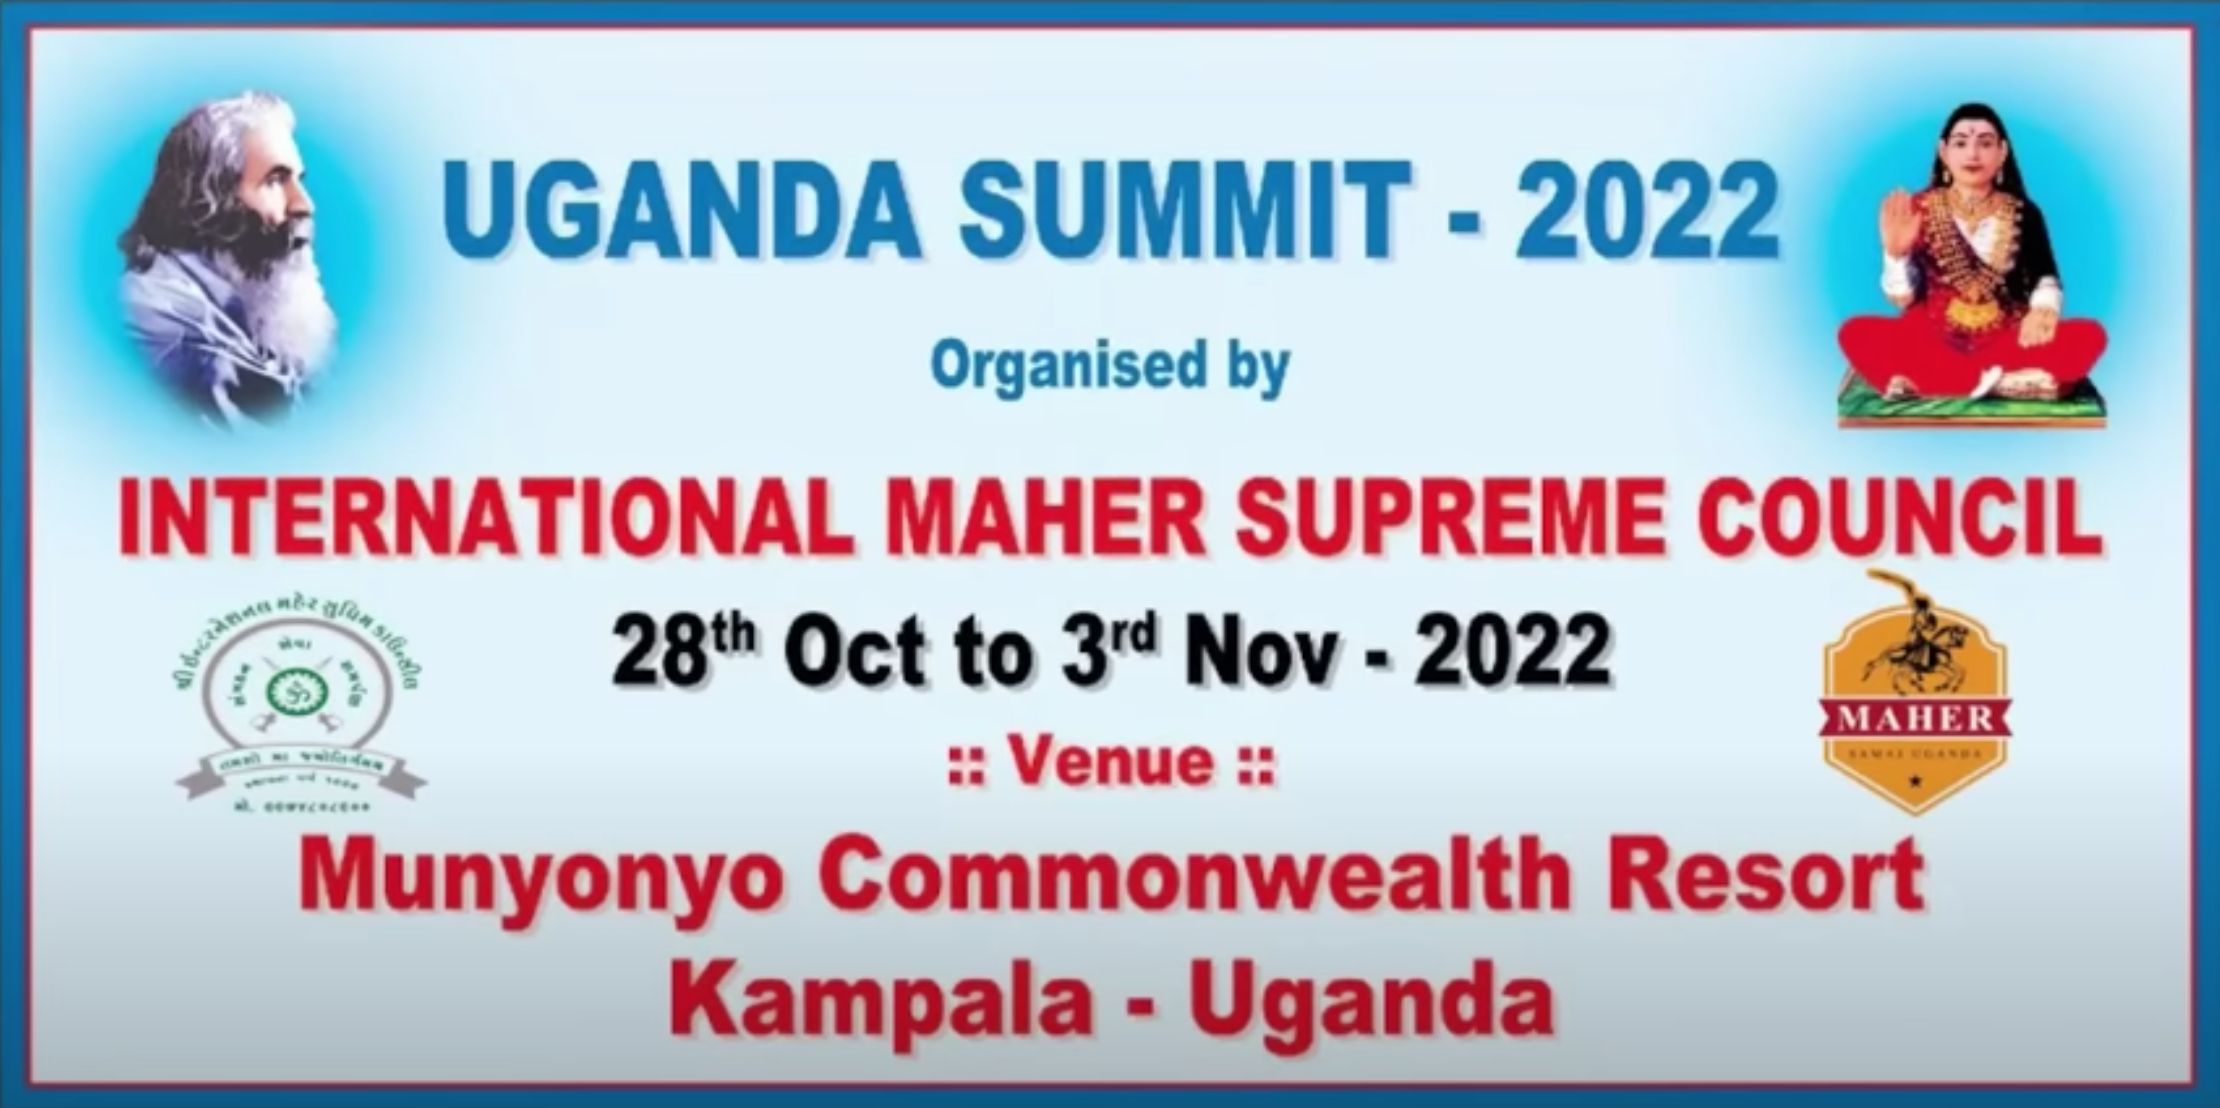 Maher Uganda Summit 2022